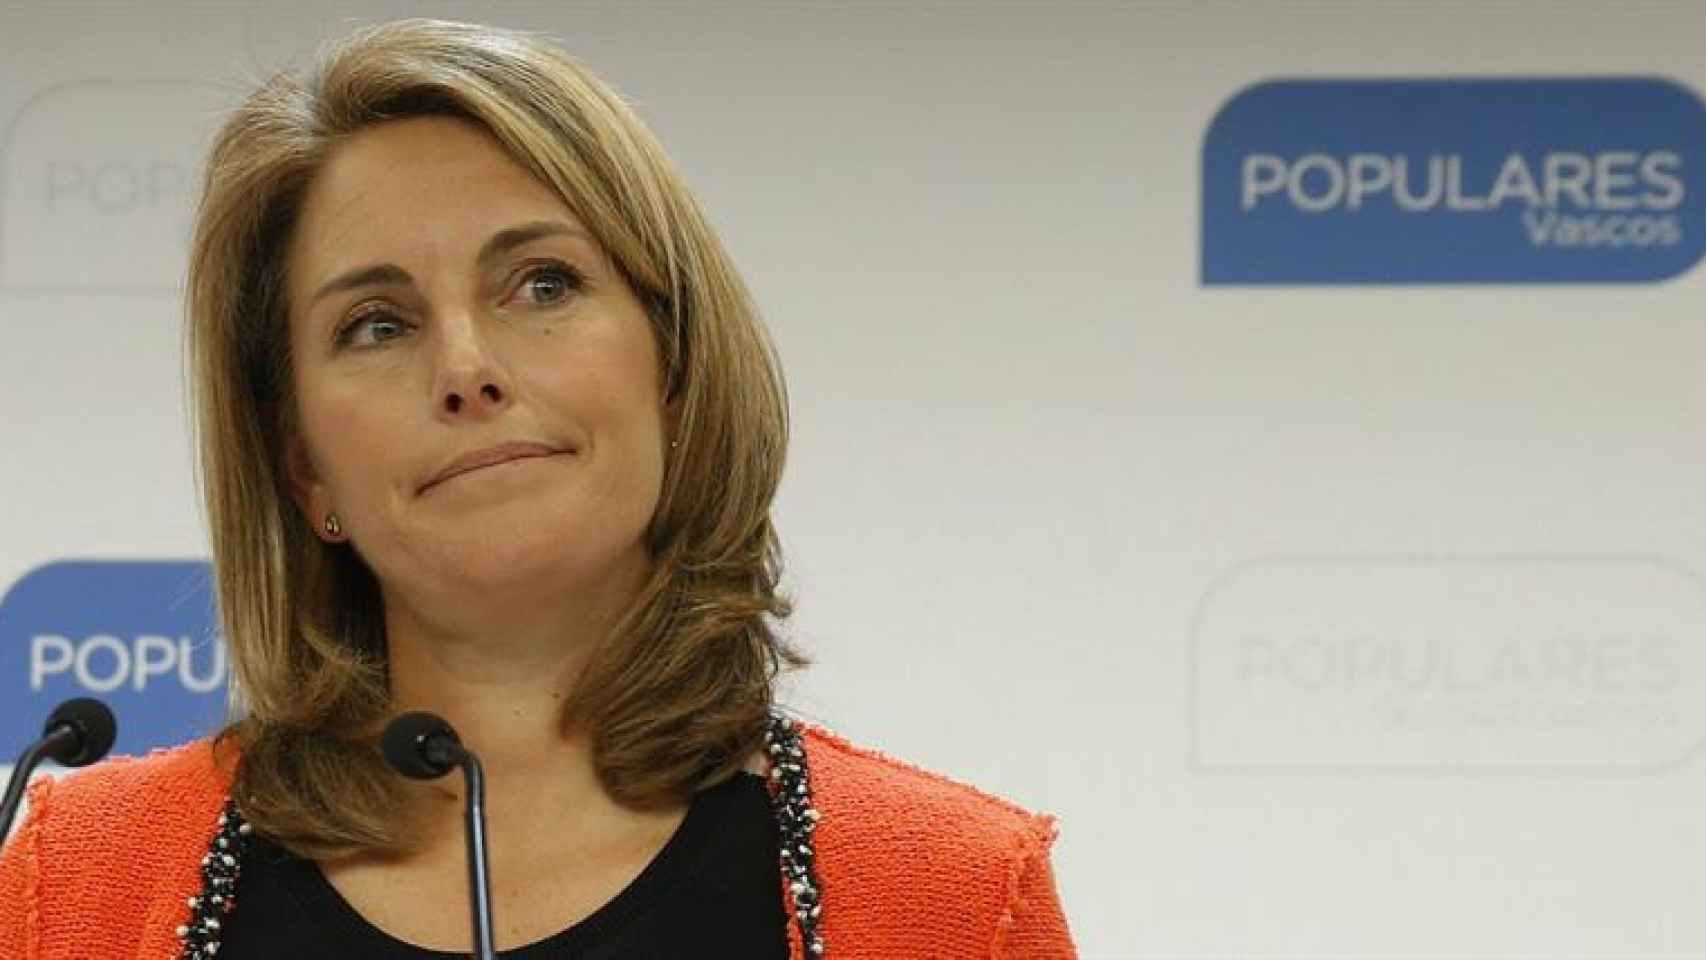 La presidenta del PP del País Vasco, Arantza Quiroga, ha comunicado hoy su decisión de dimitir